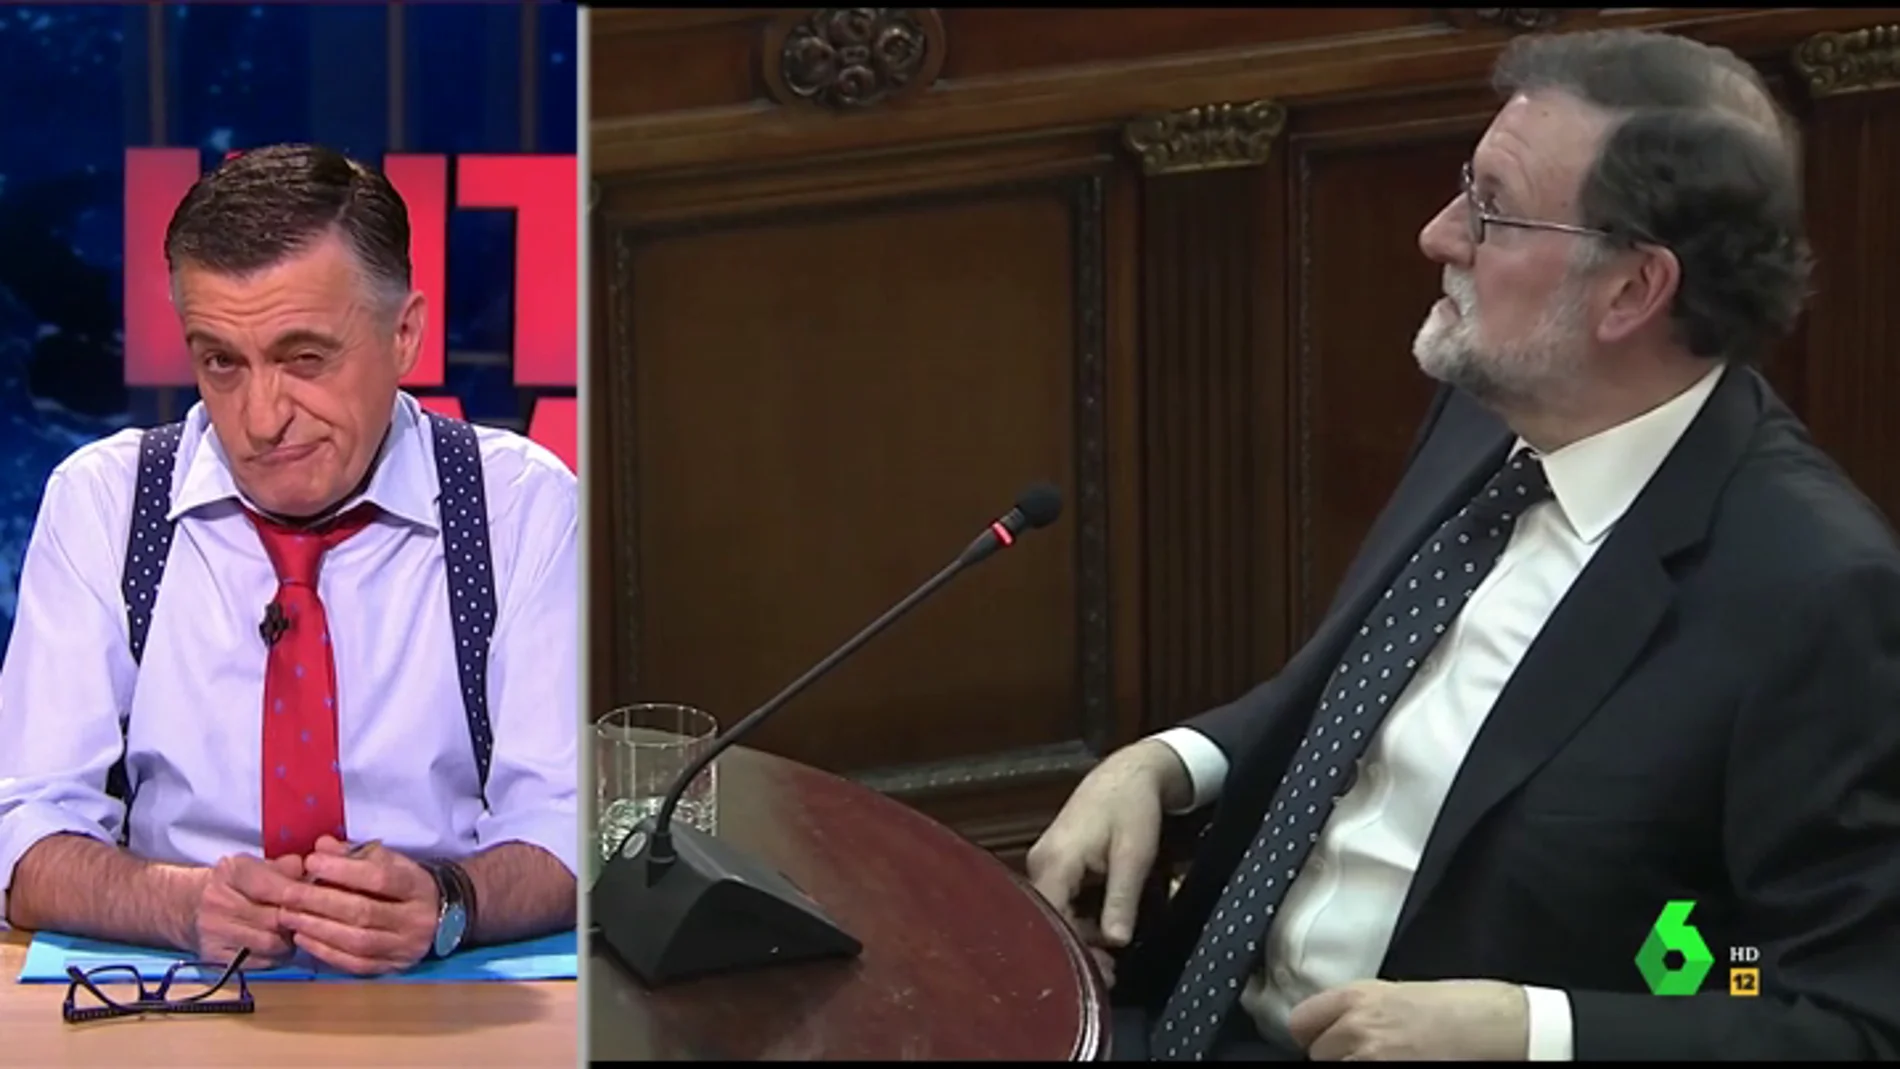  Esto es lo que recuerda Mariano Rajoy durante el juicio del 'procés': "Con las preguntas sobre Urkullu iban a pillar"